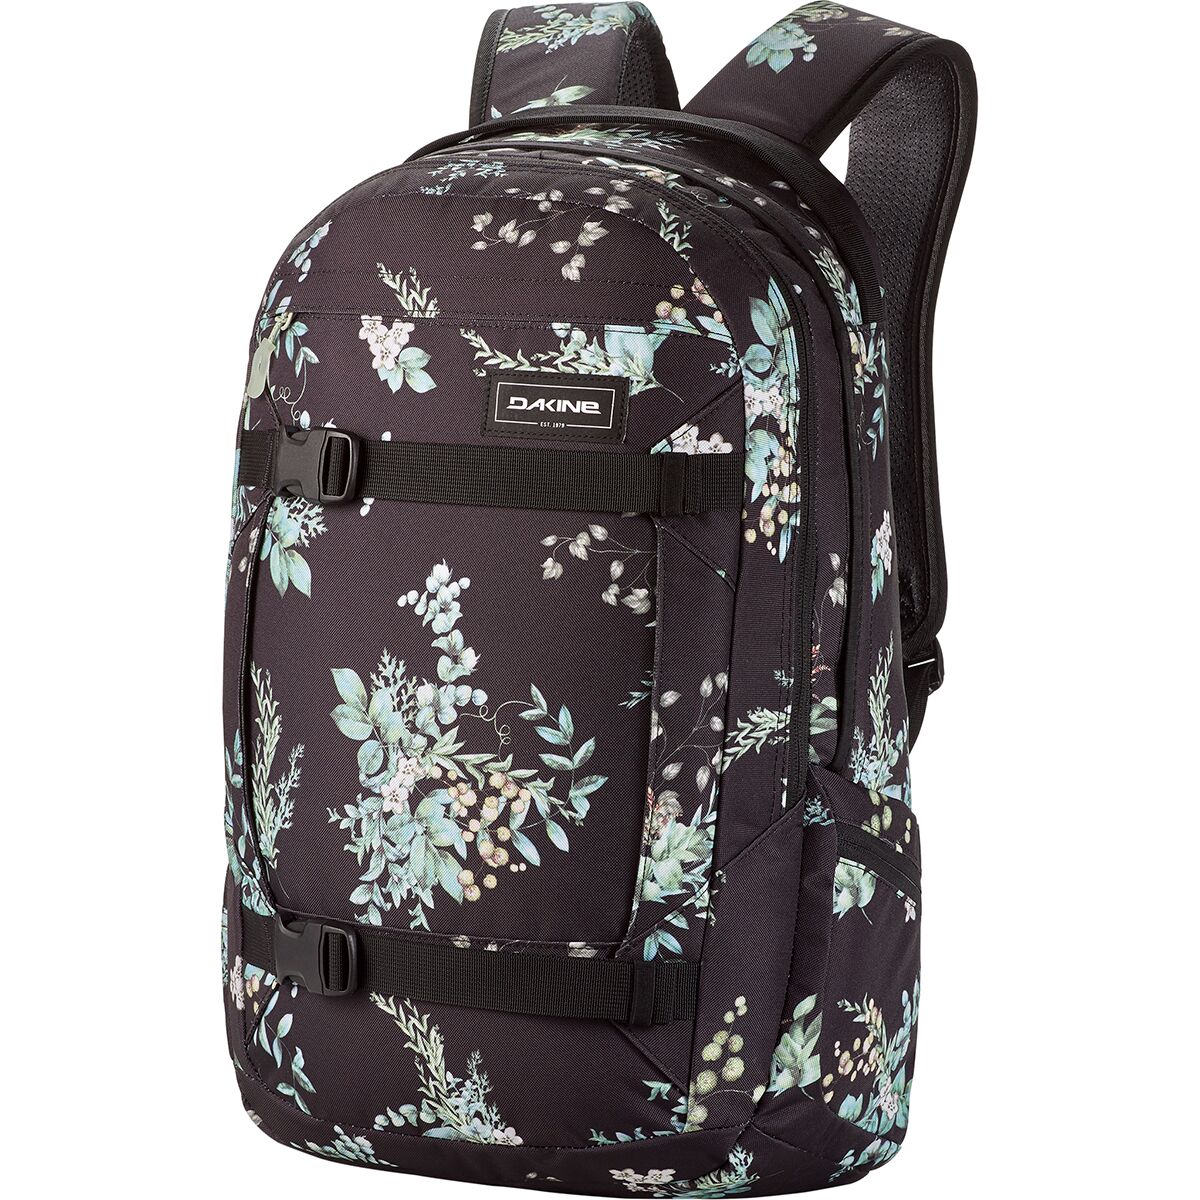 DAKINE Mission 25L Backpack - Women's Solstice Floral